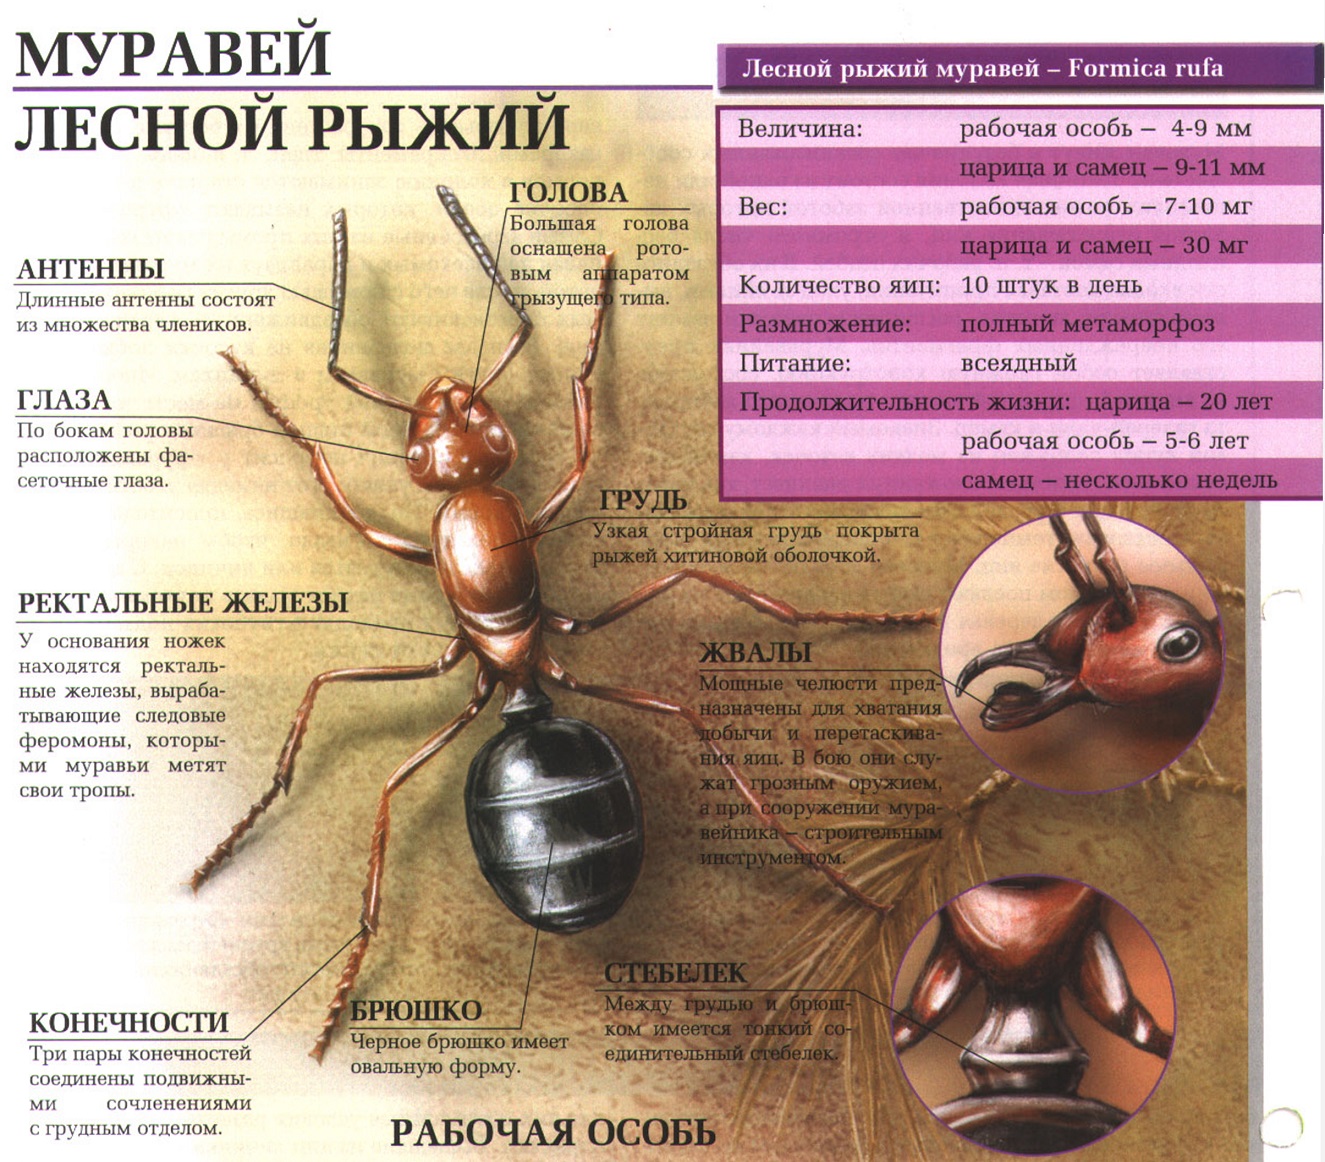 Описание рыжего лесного муравья.